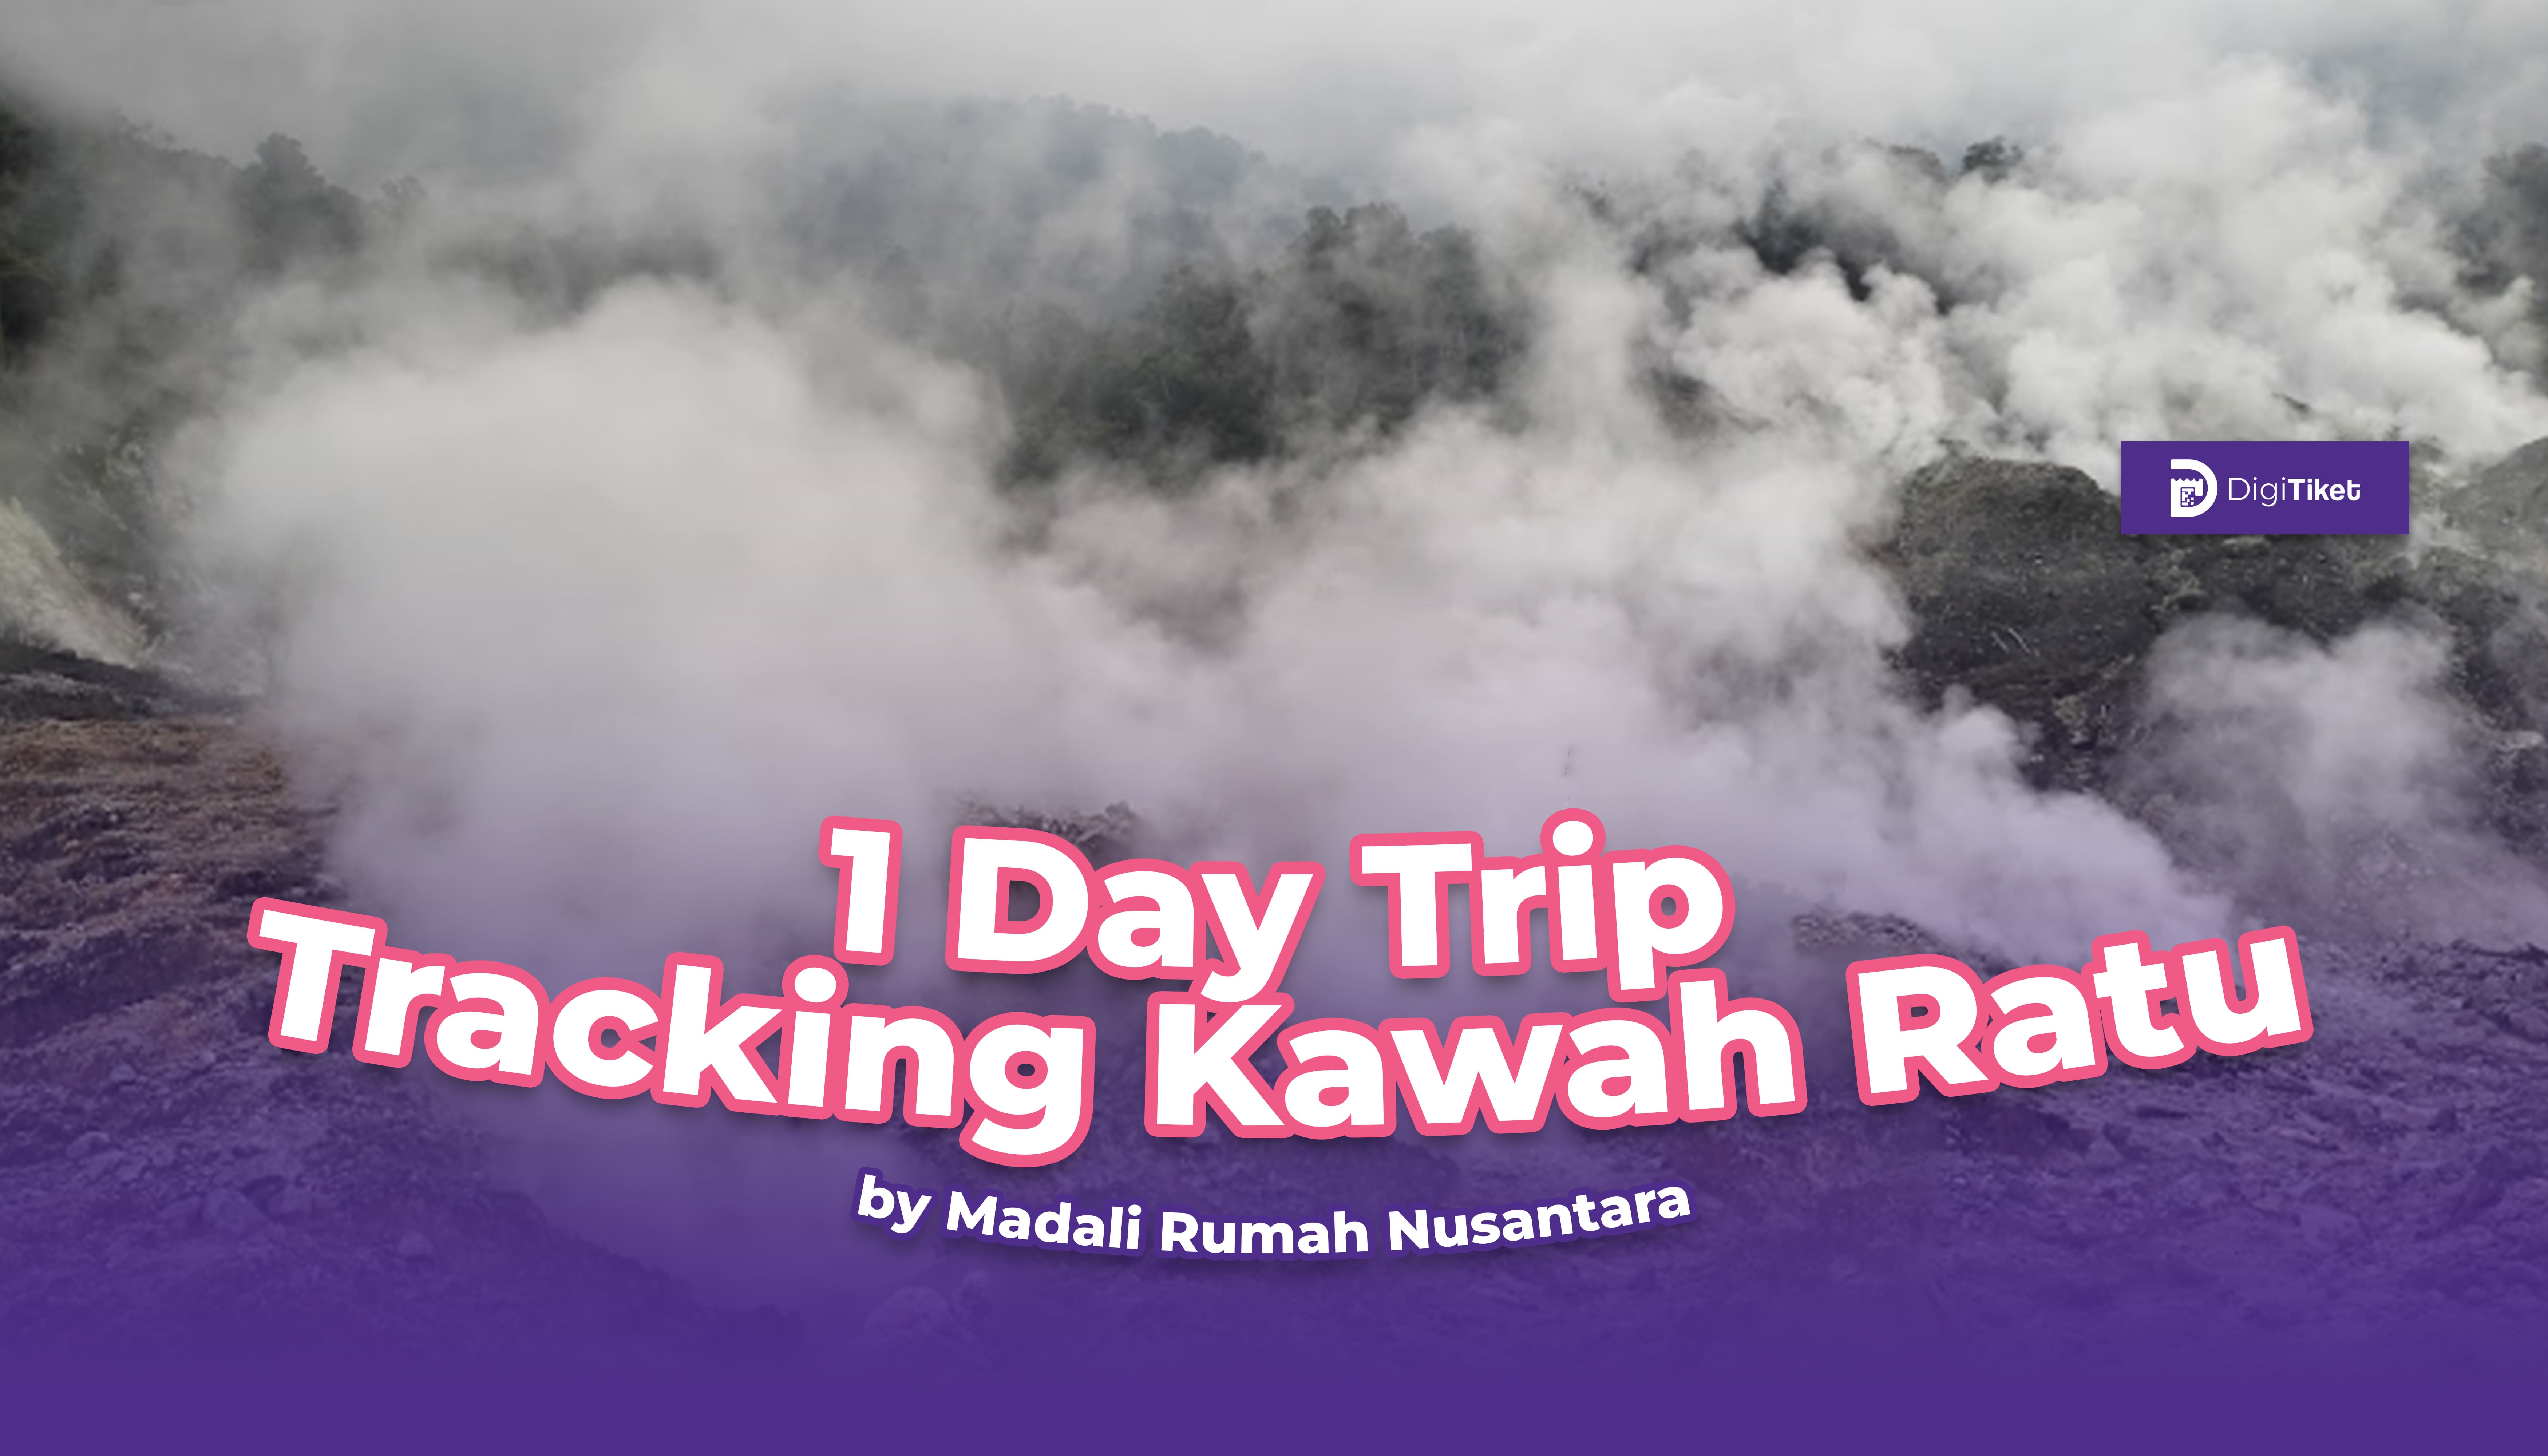 1 Day Trip Tracking Kawah Ratu by Madali Rumah Nusantara